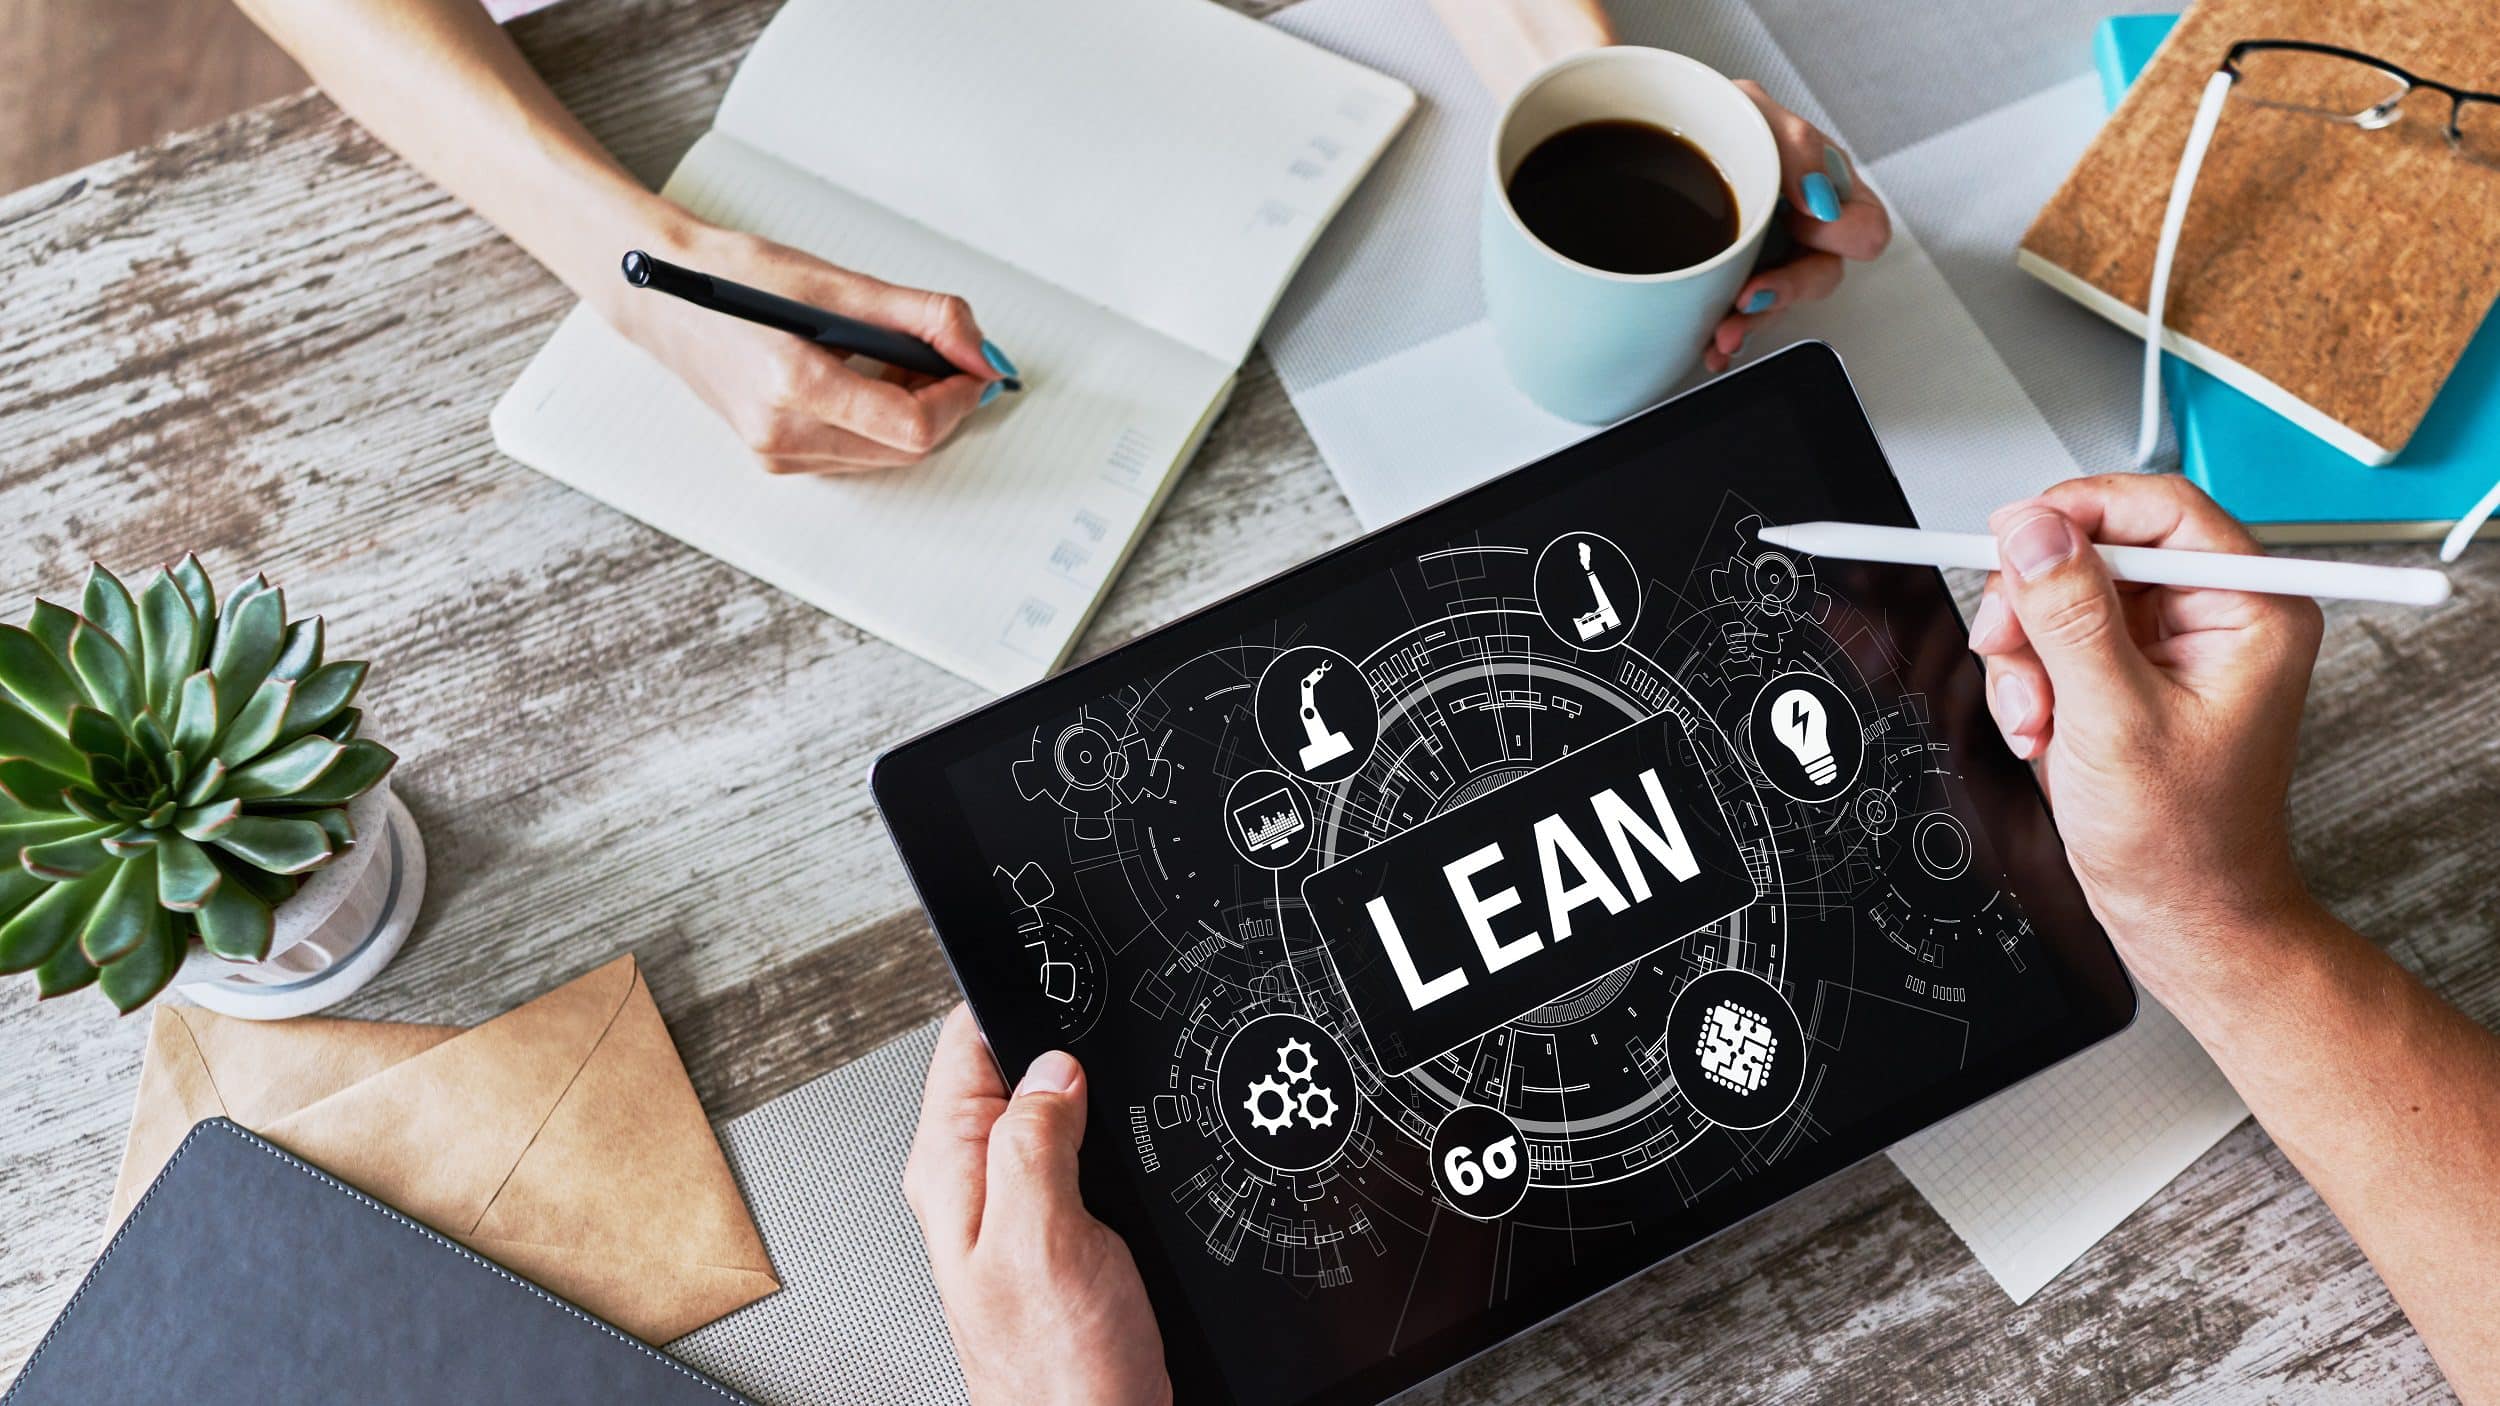 Les apports des méthodes Lean et Six Sigma® dans les approches de l’industrie 4.0